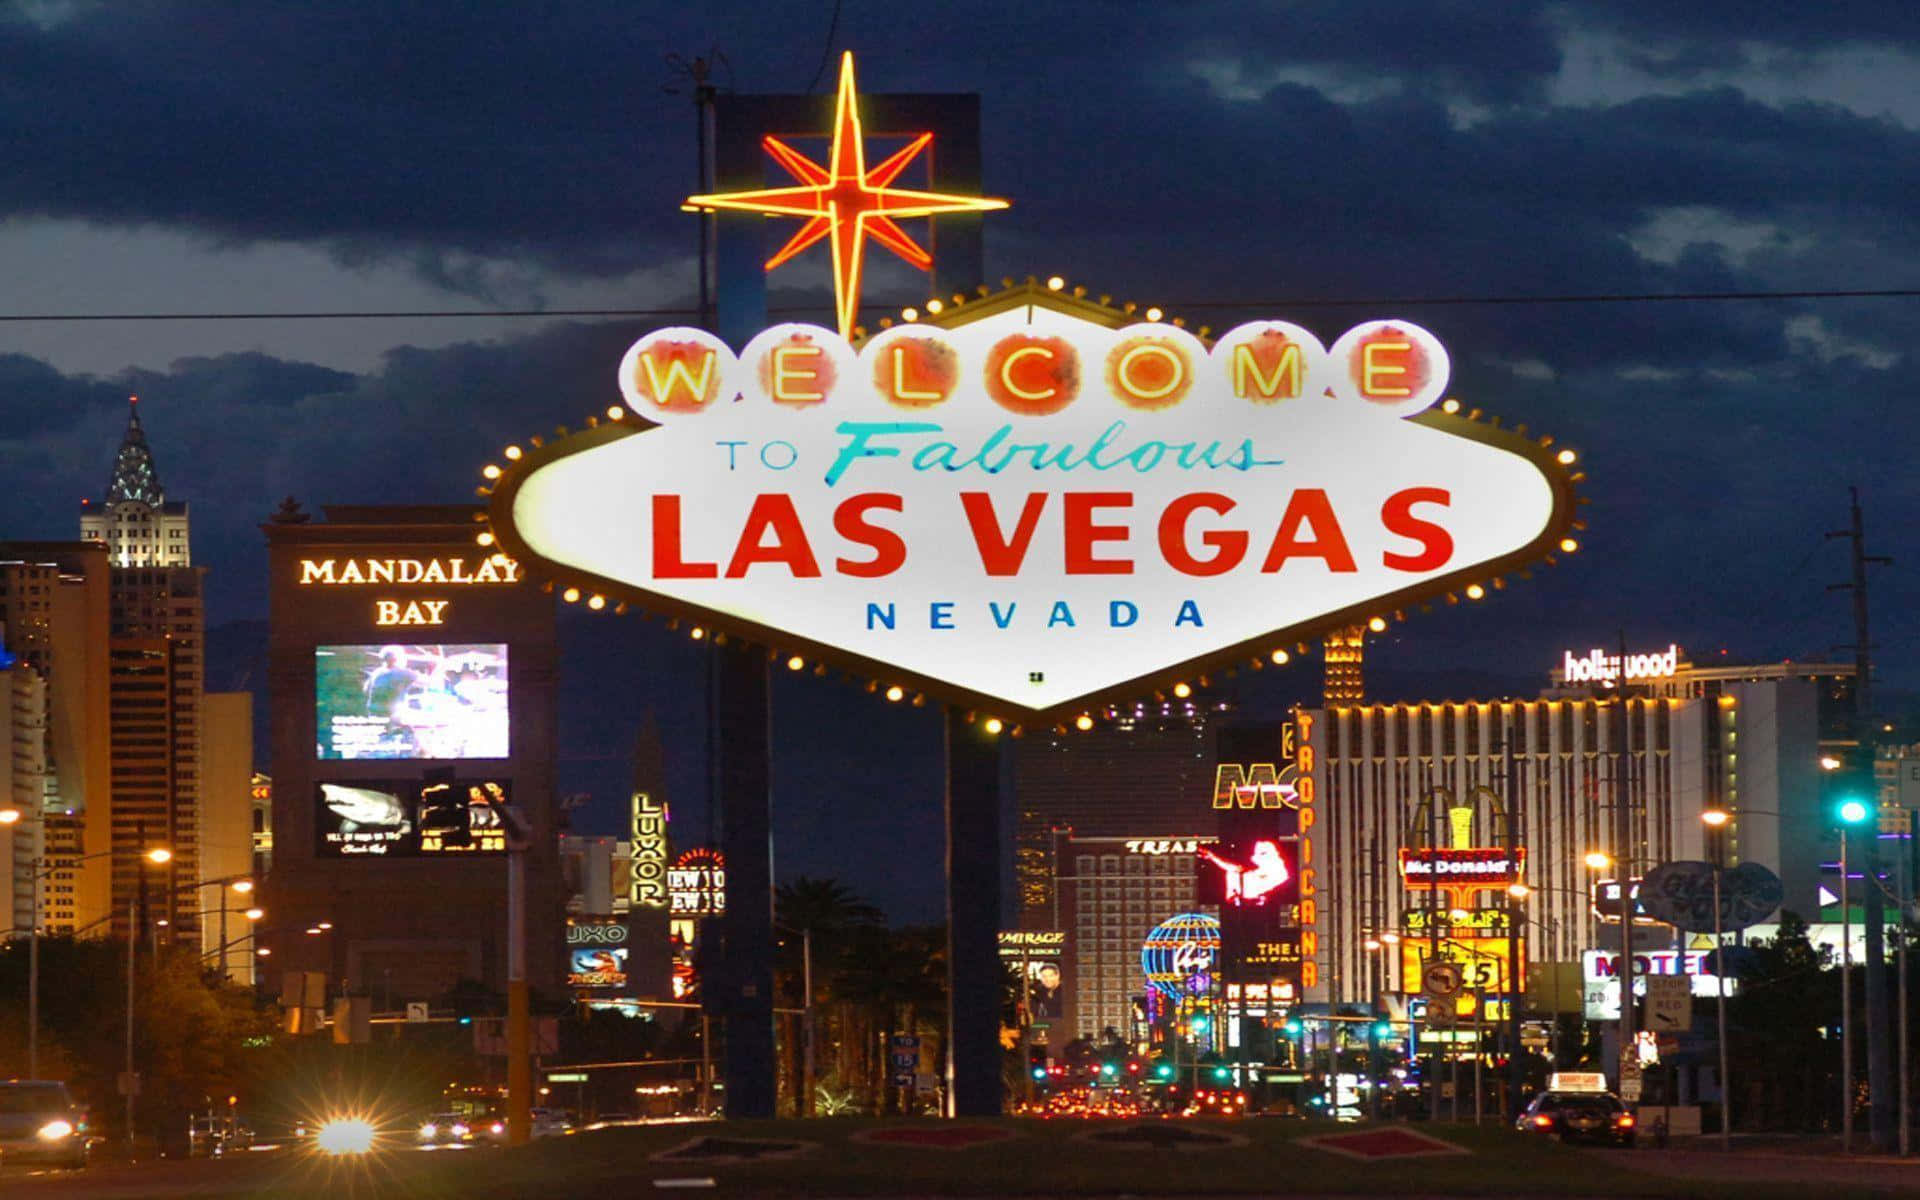 Tag et kig ind i de neonlys fra Las Vegas. Wallpaper